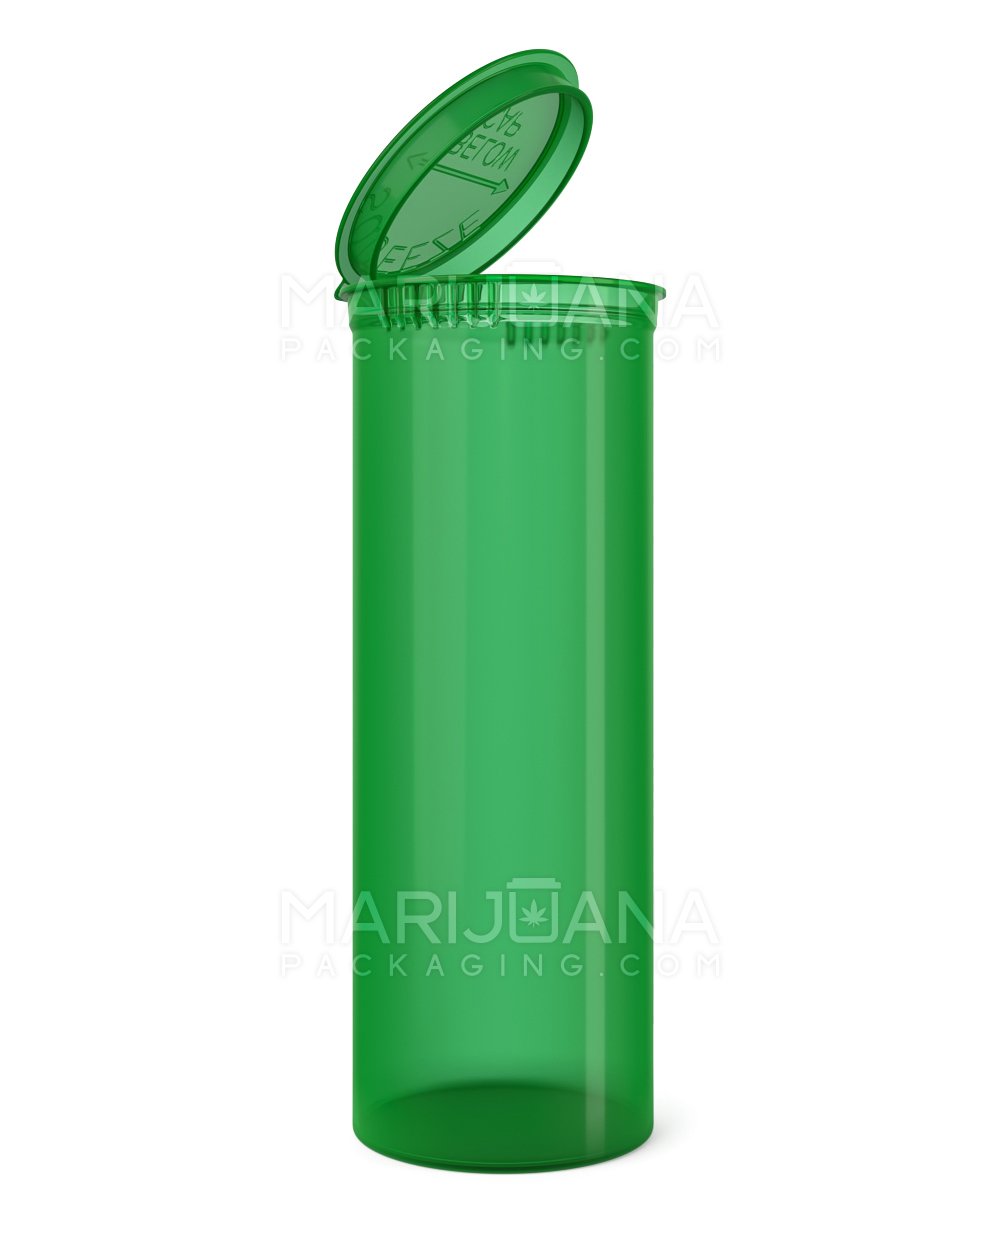 Child Resistant Transparent Green Pop Top Bottles | 60dr - 14g | Sample - 1